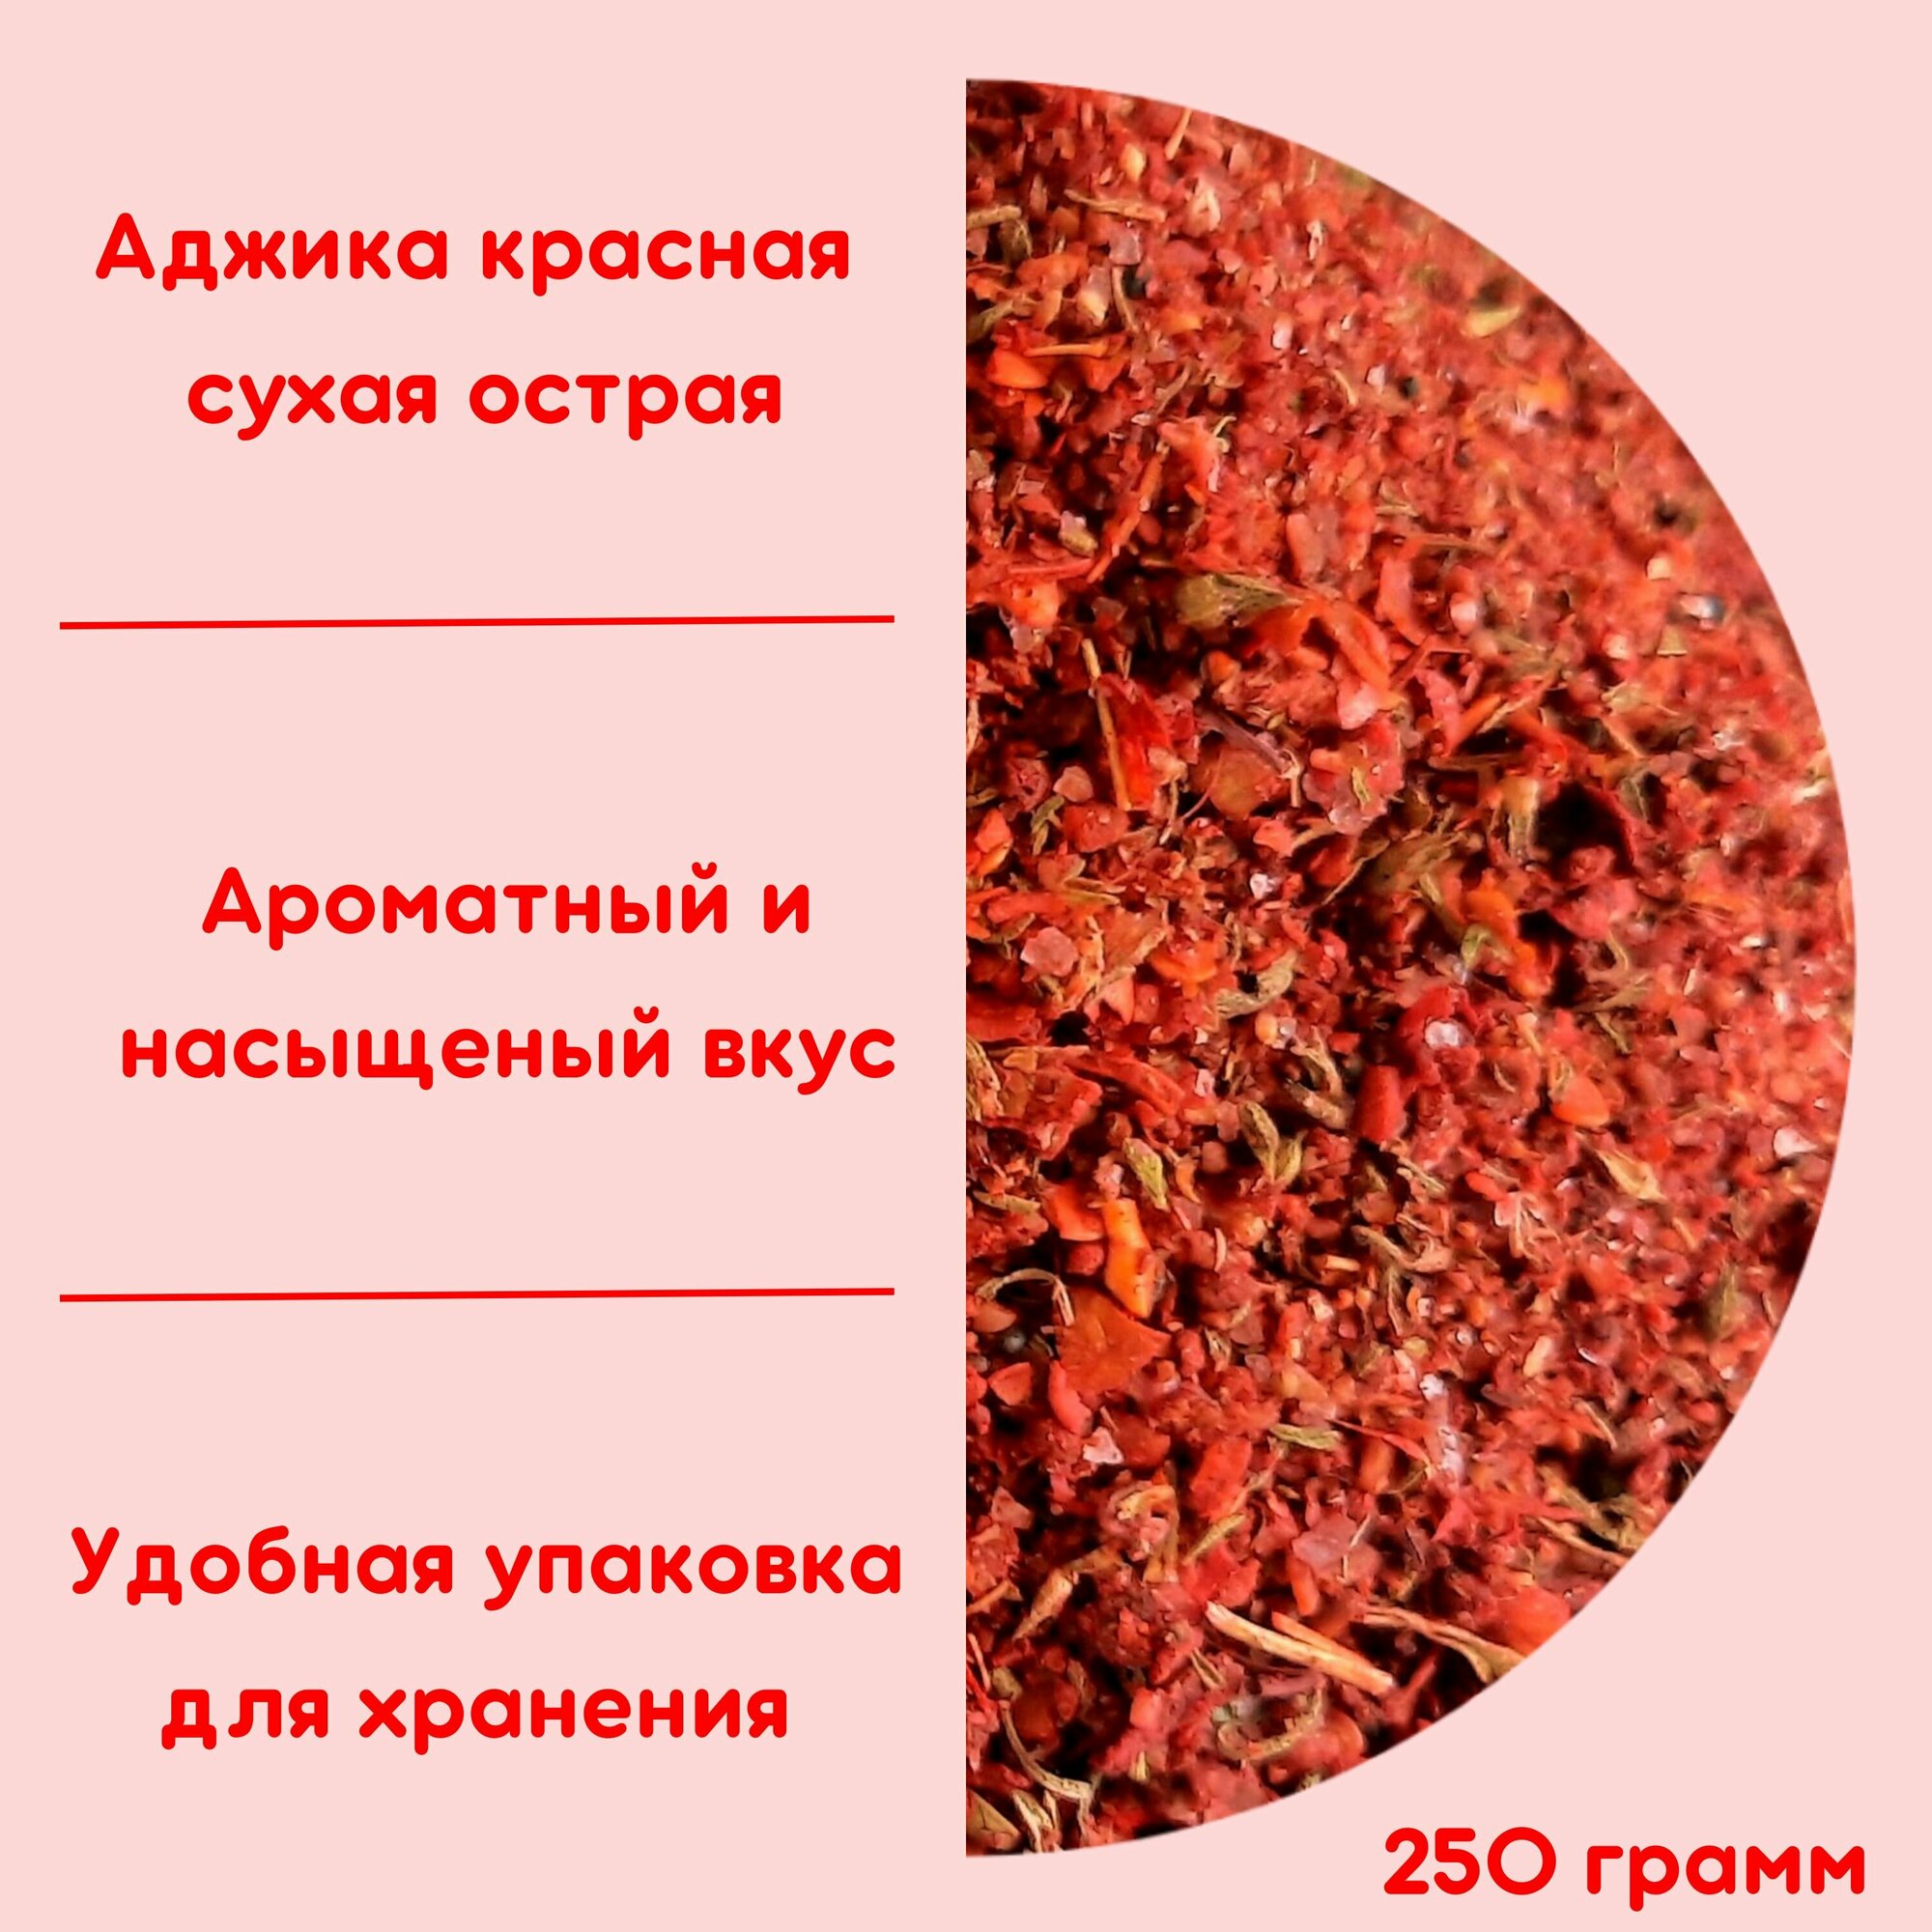 Аджика сухая острая красная (250г)